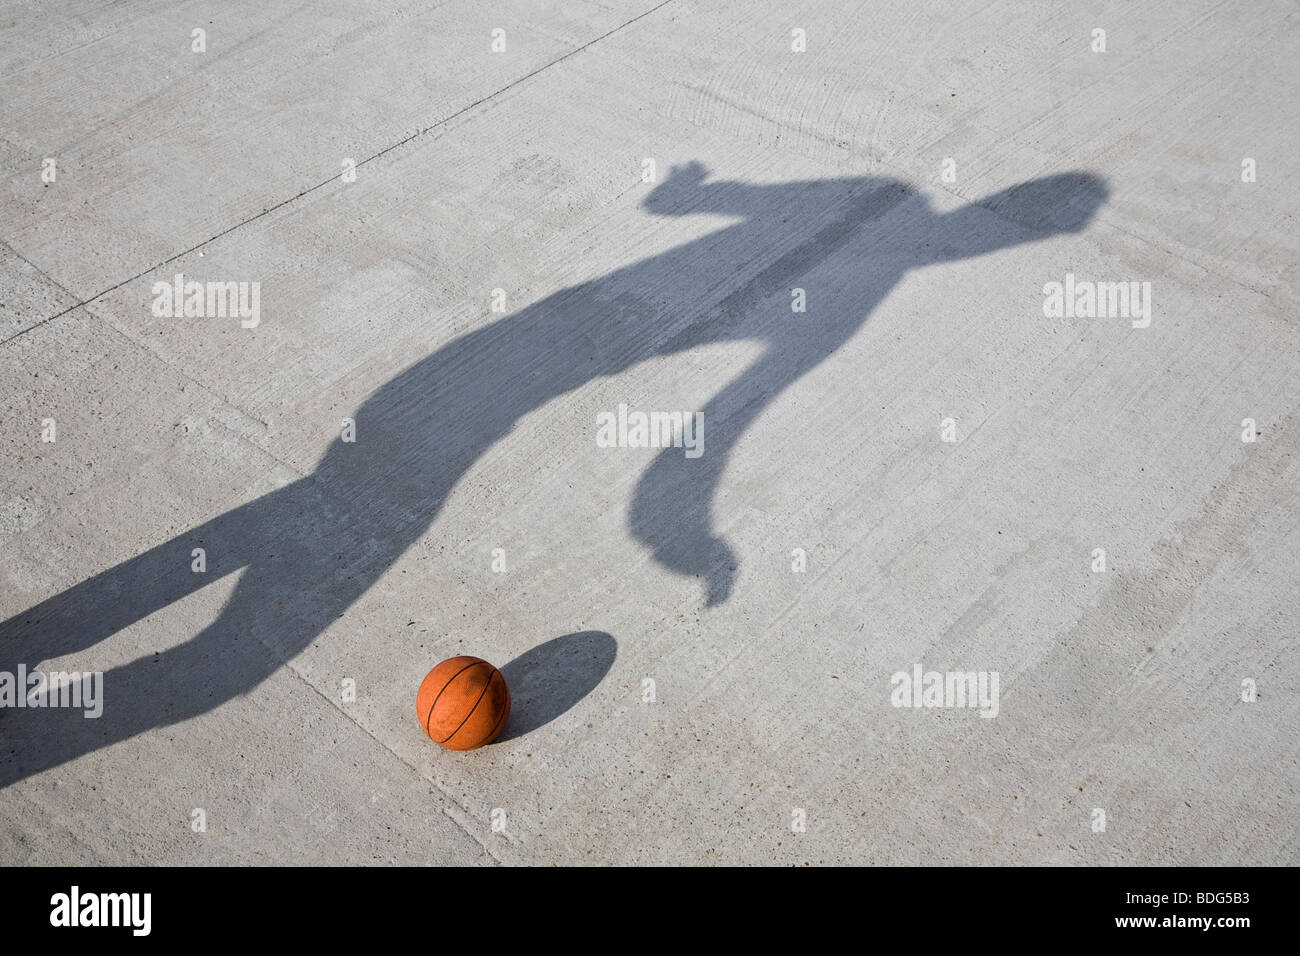 Jouer au basket-ball de l'ombre Banque D'Images